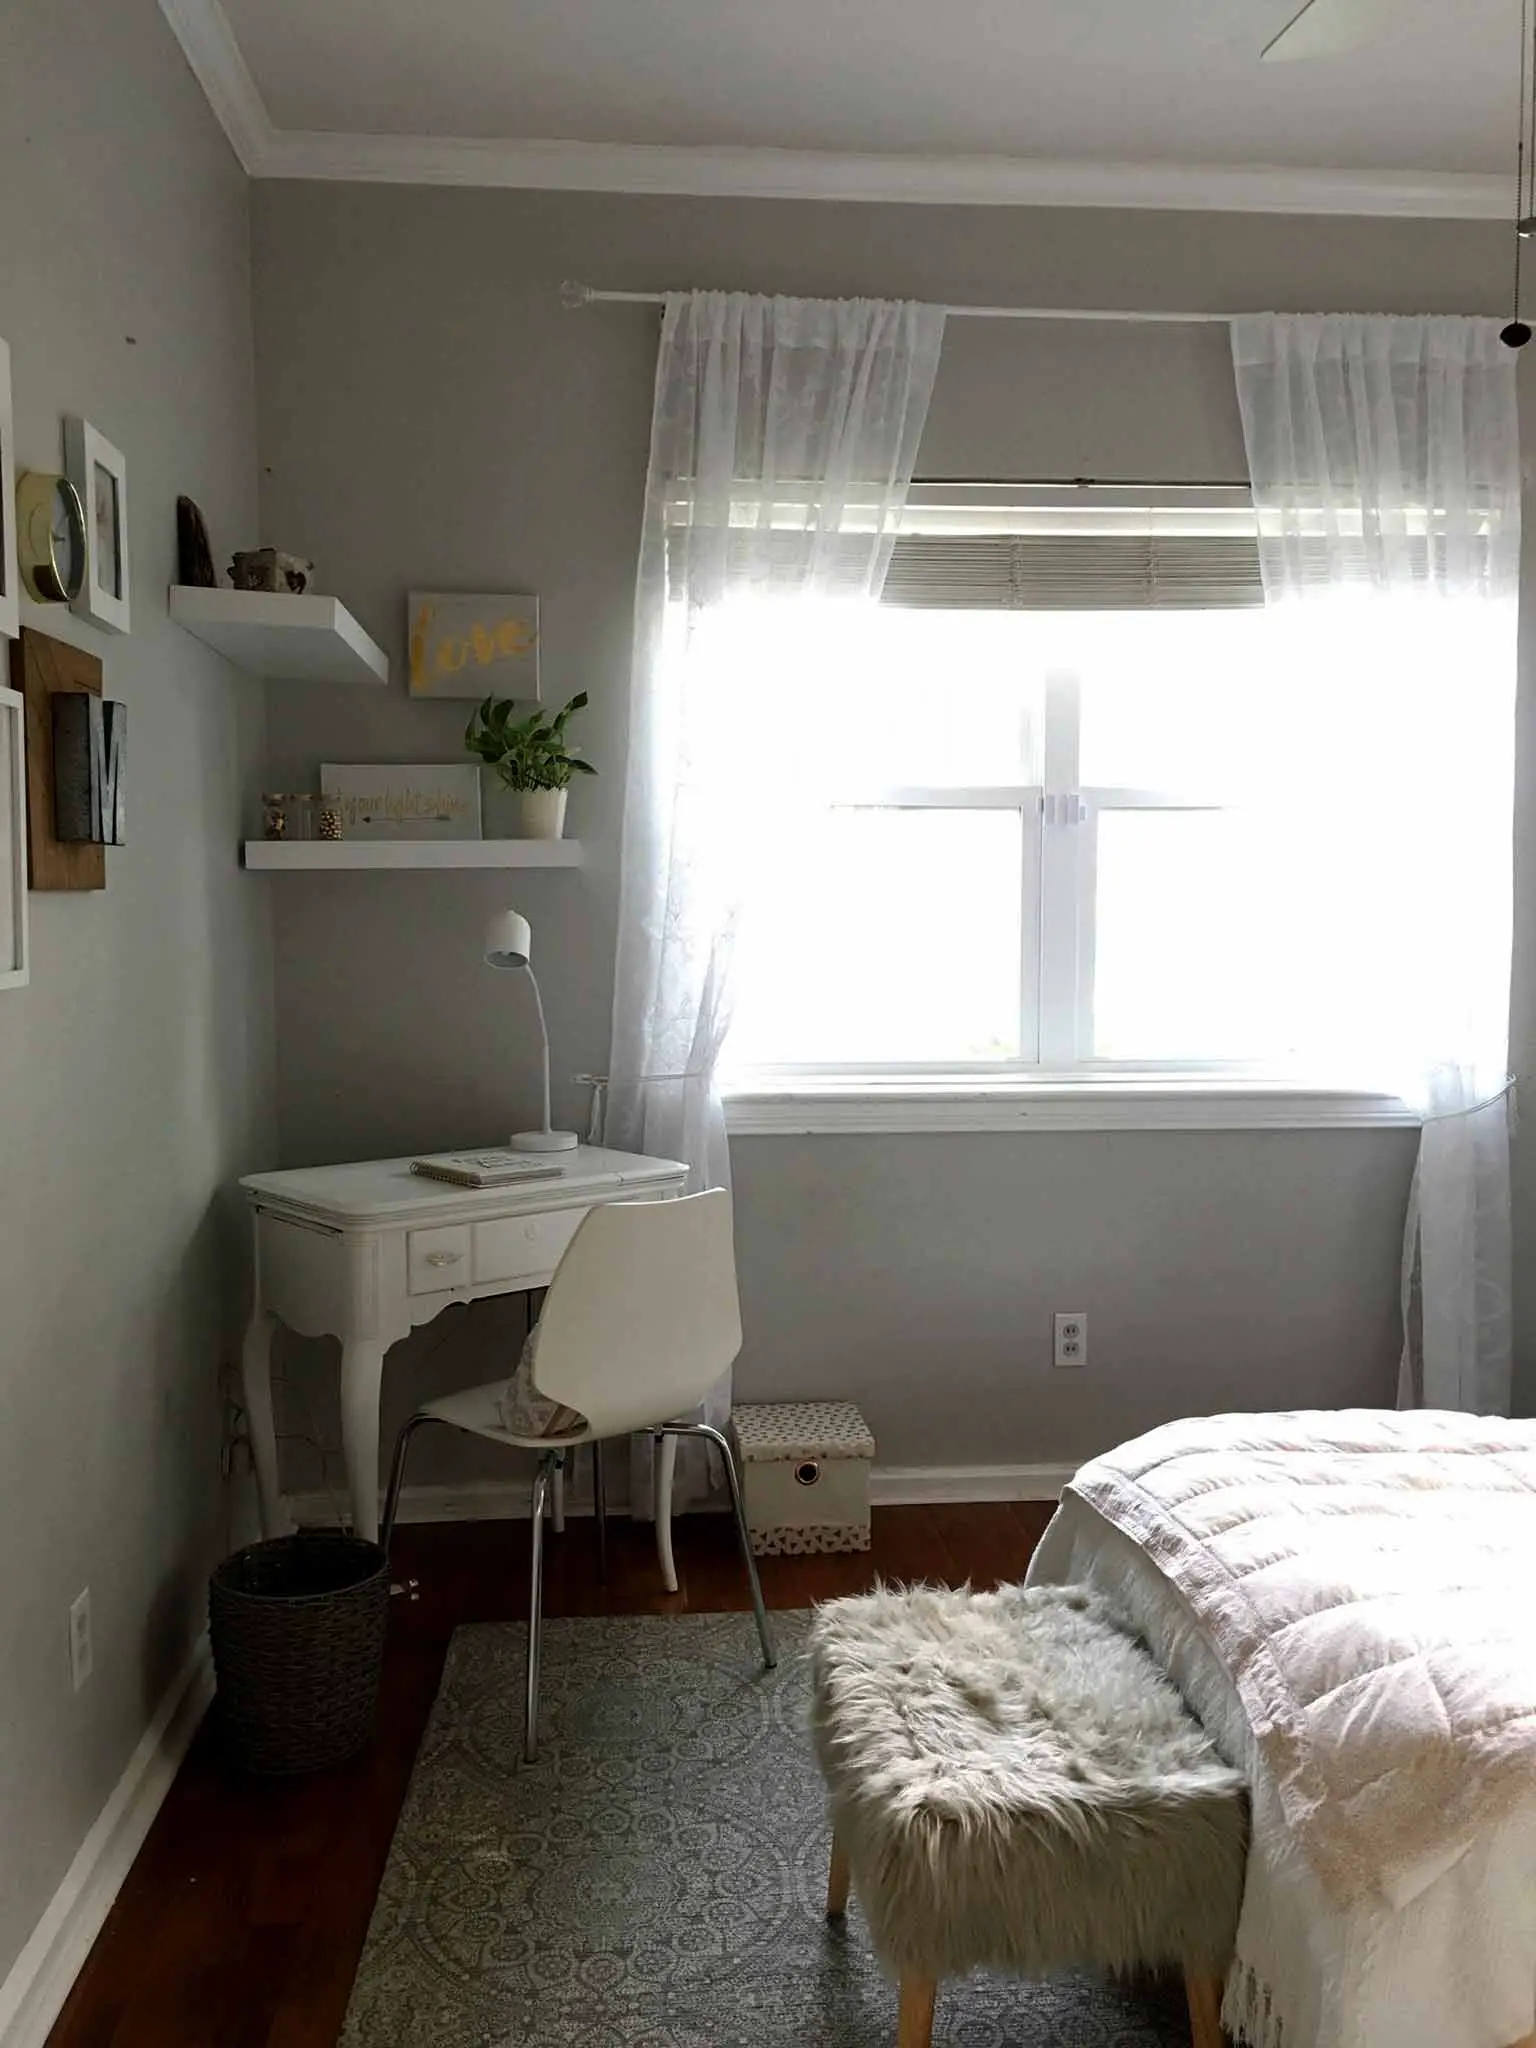 Desk in the corner of the room - modern boho tween bedroom - That Homebird Life Blog